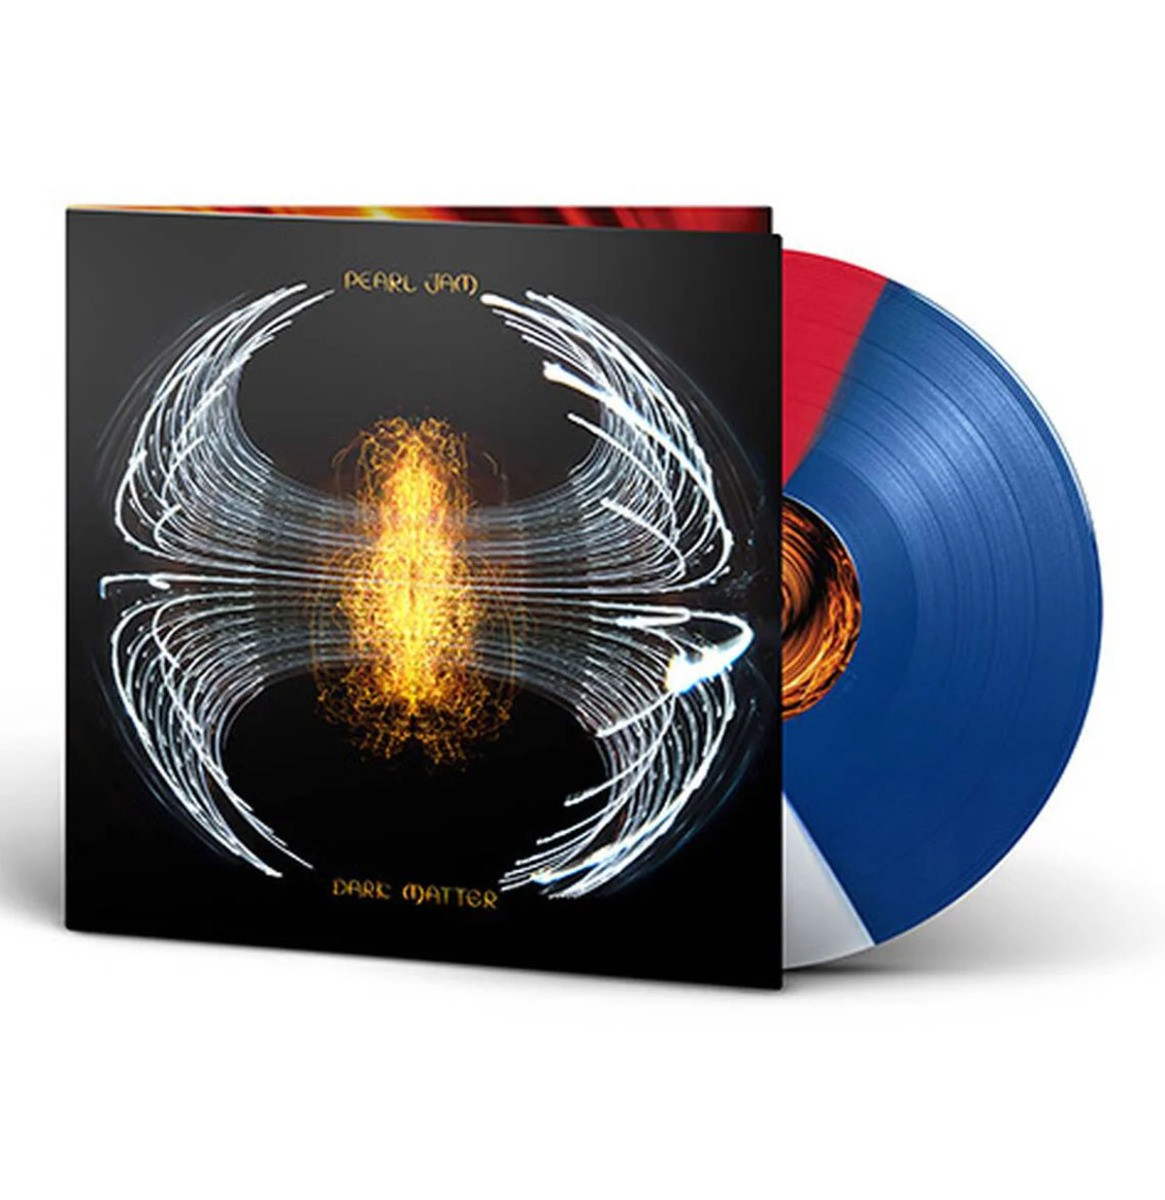 Pearl Jam - Dark Matter (Red, White & Blue Coloured Vinyl) LP